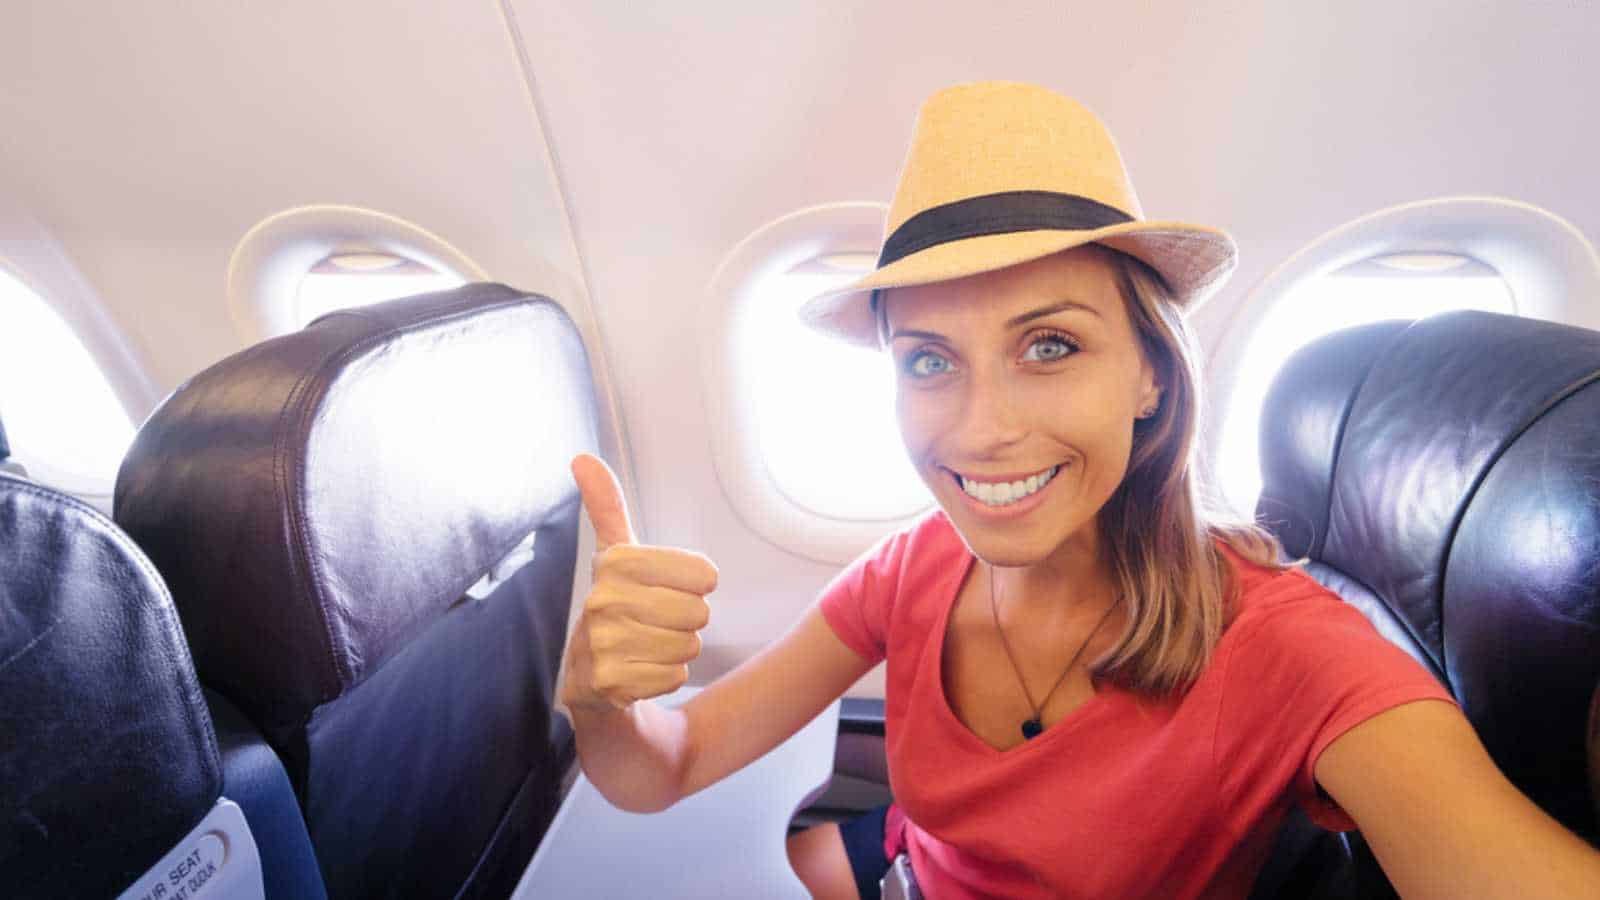 Woman traveling in flight taking selfie